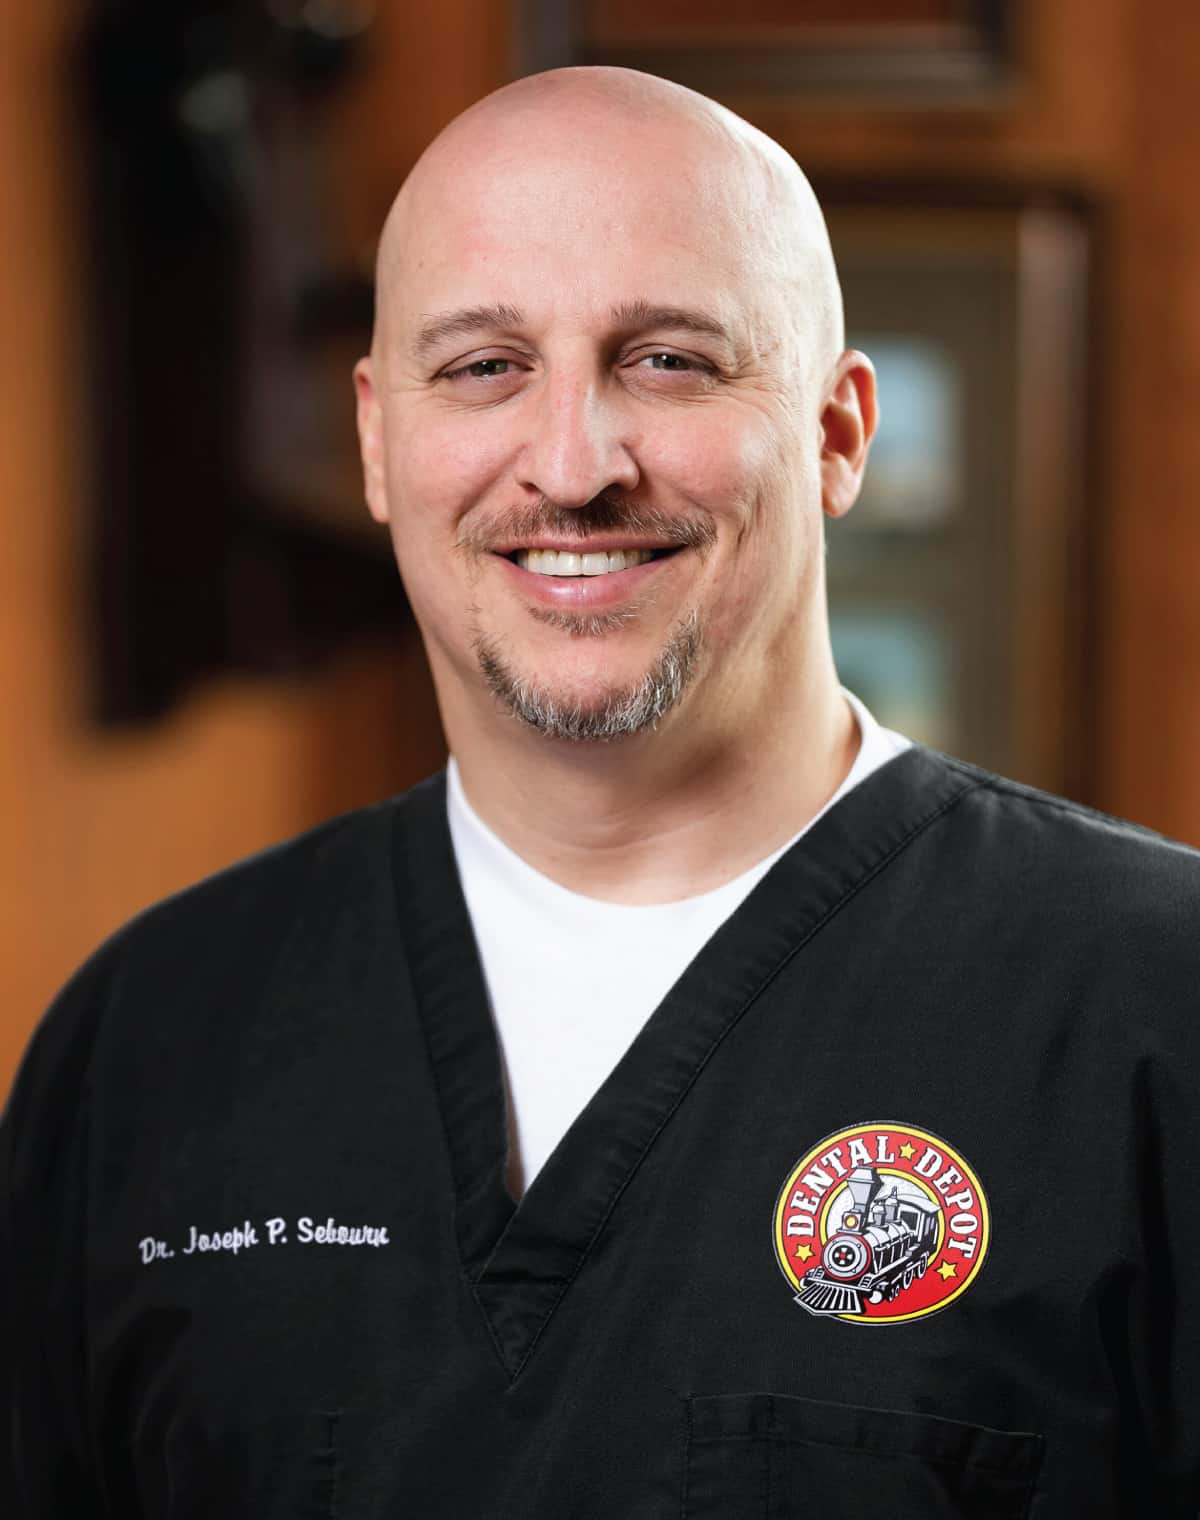 Dr. Joseph Sebourn of dental depot